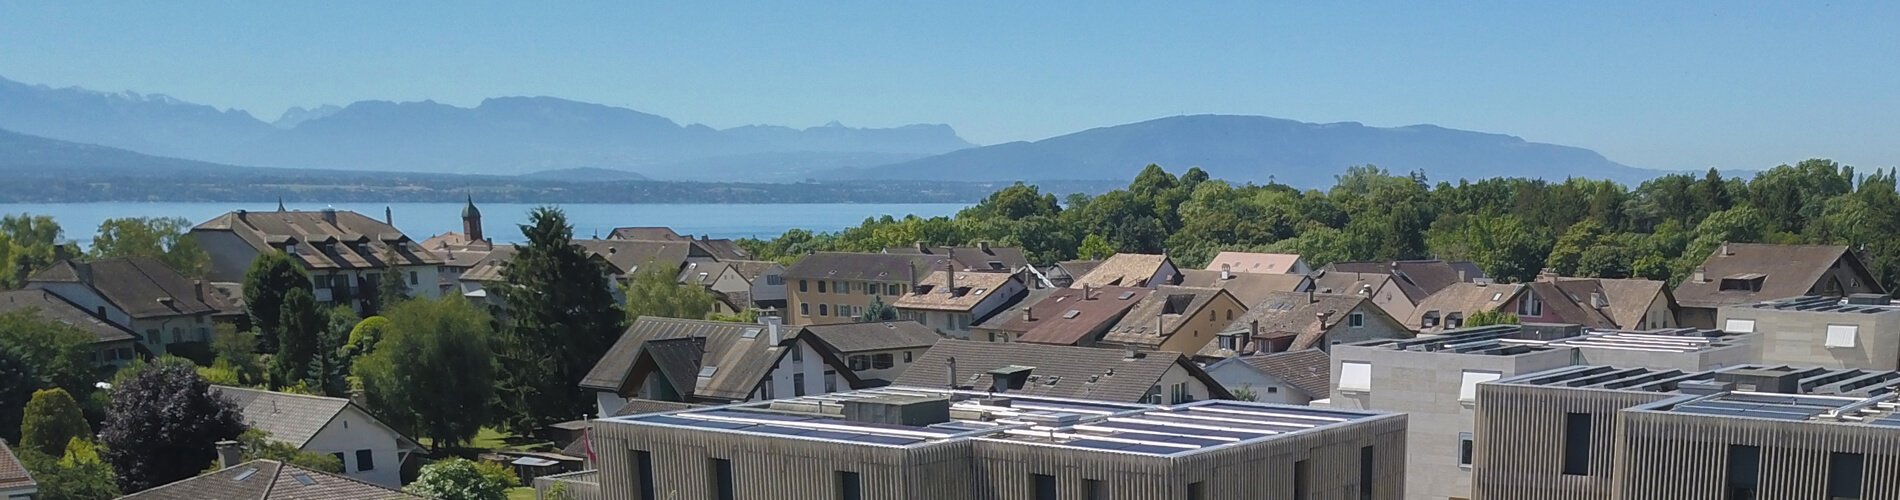 Ecole Montessori en Suisse - Nyon (VD)